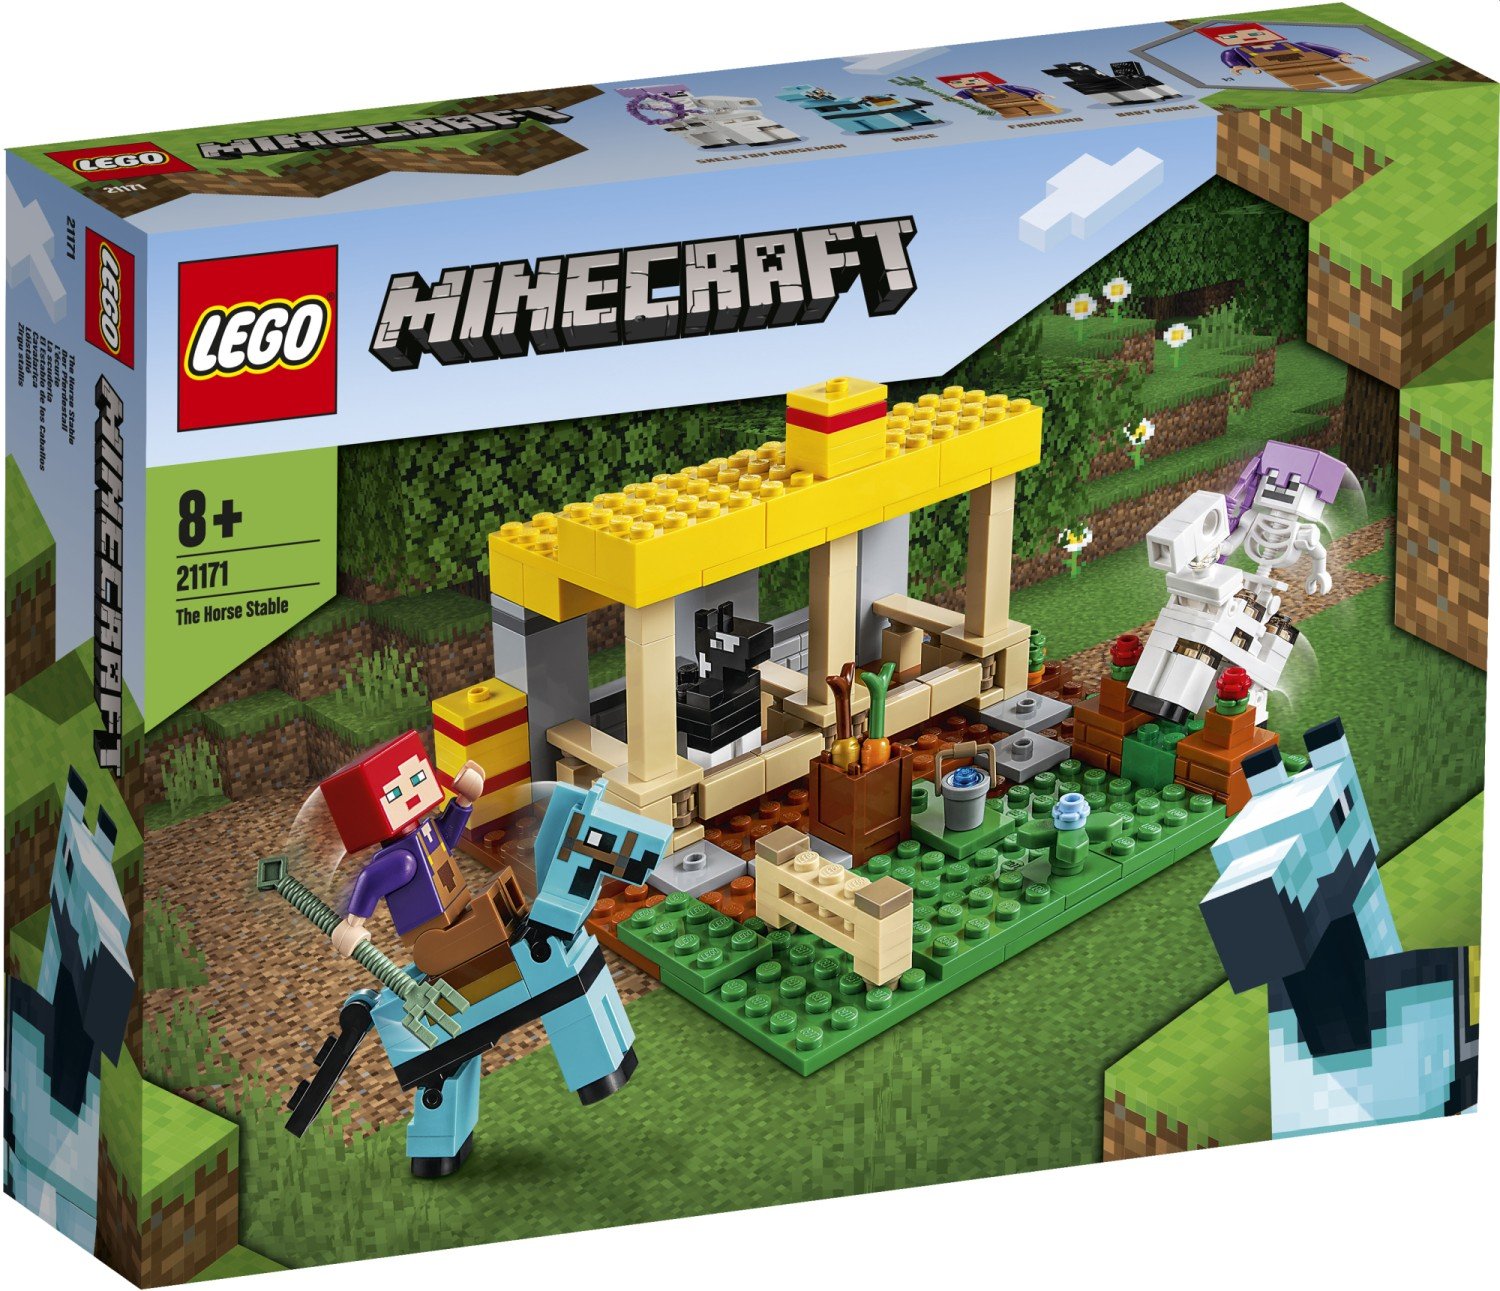 LEGO Minecraft Summer 2021 Sets Revealed